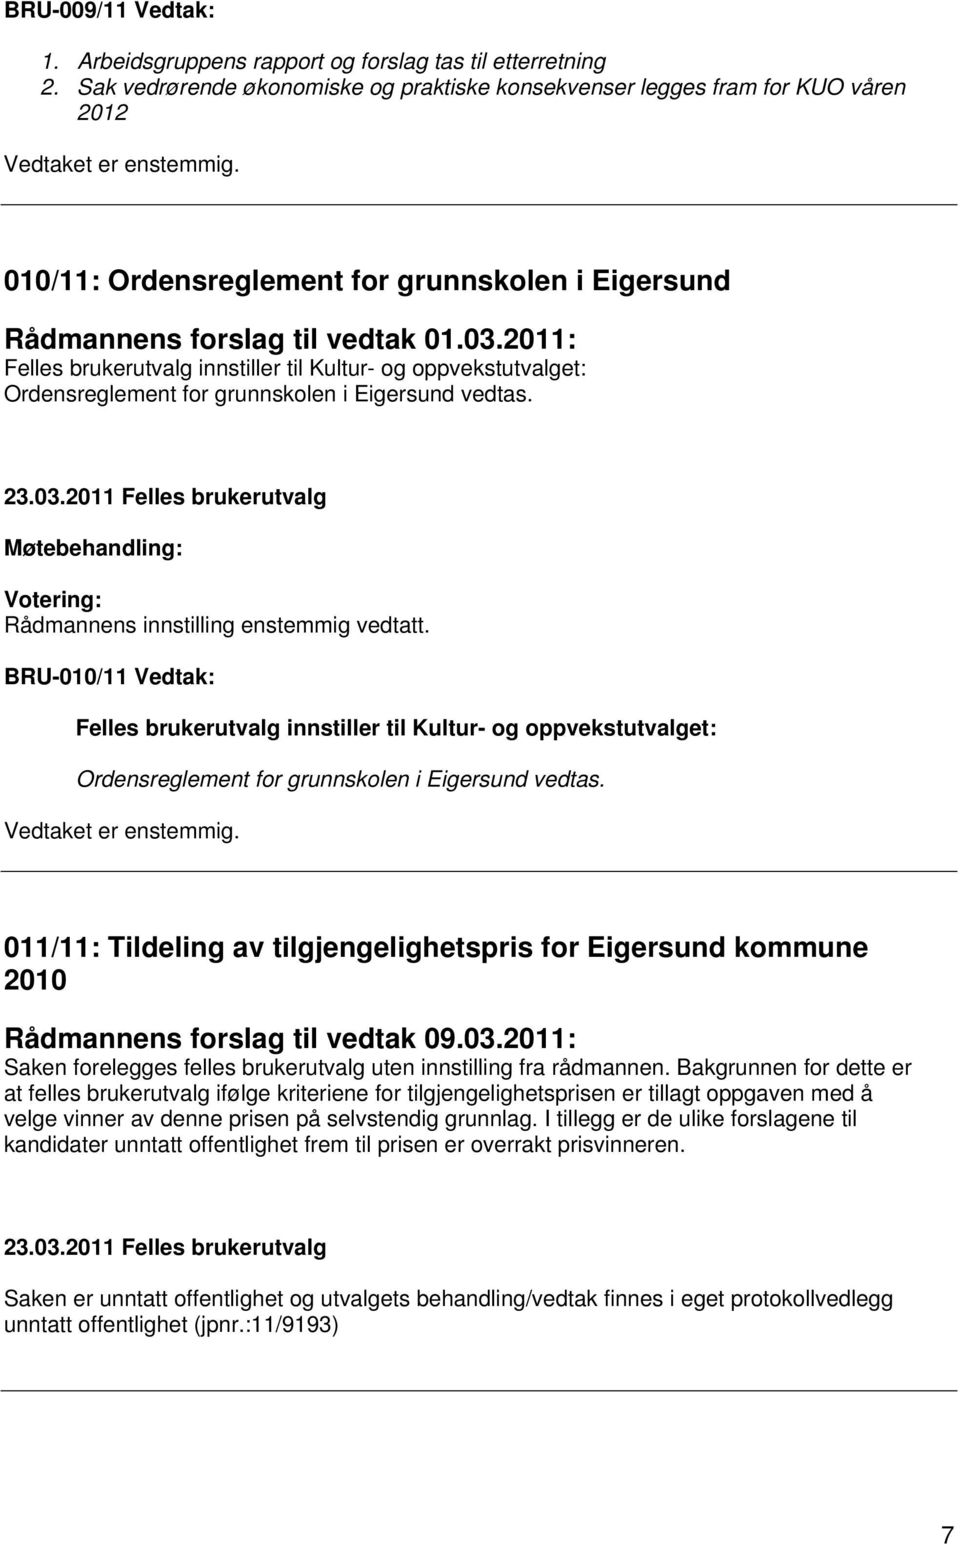 2011: Felles brukerutvalg innstiller til Kultur- og oppvekstutvalget: Ordensreglement for grunnskolen i Eigersund vedtas. Rådmannens innstilling enstemmig vedtatt.